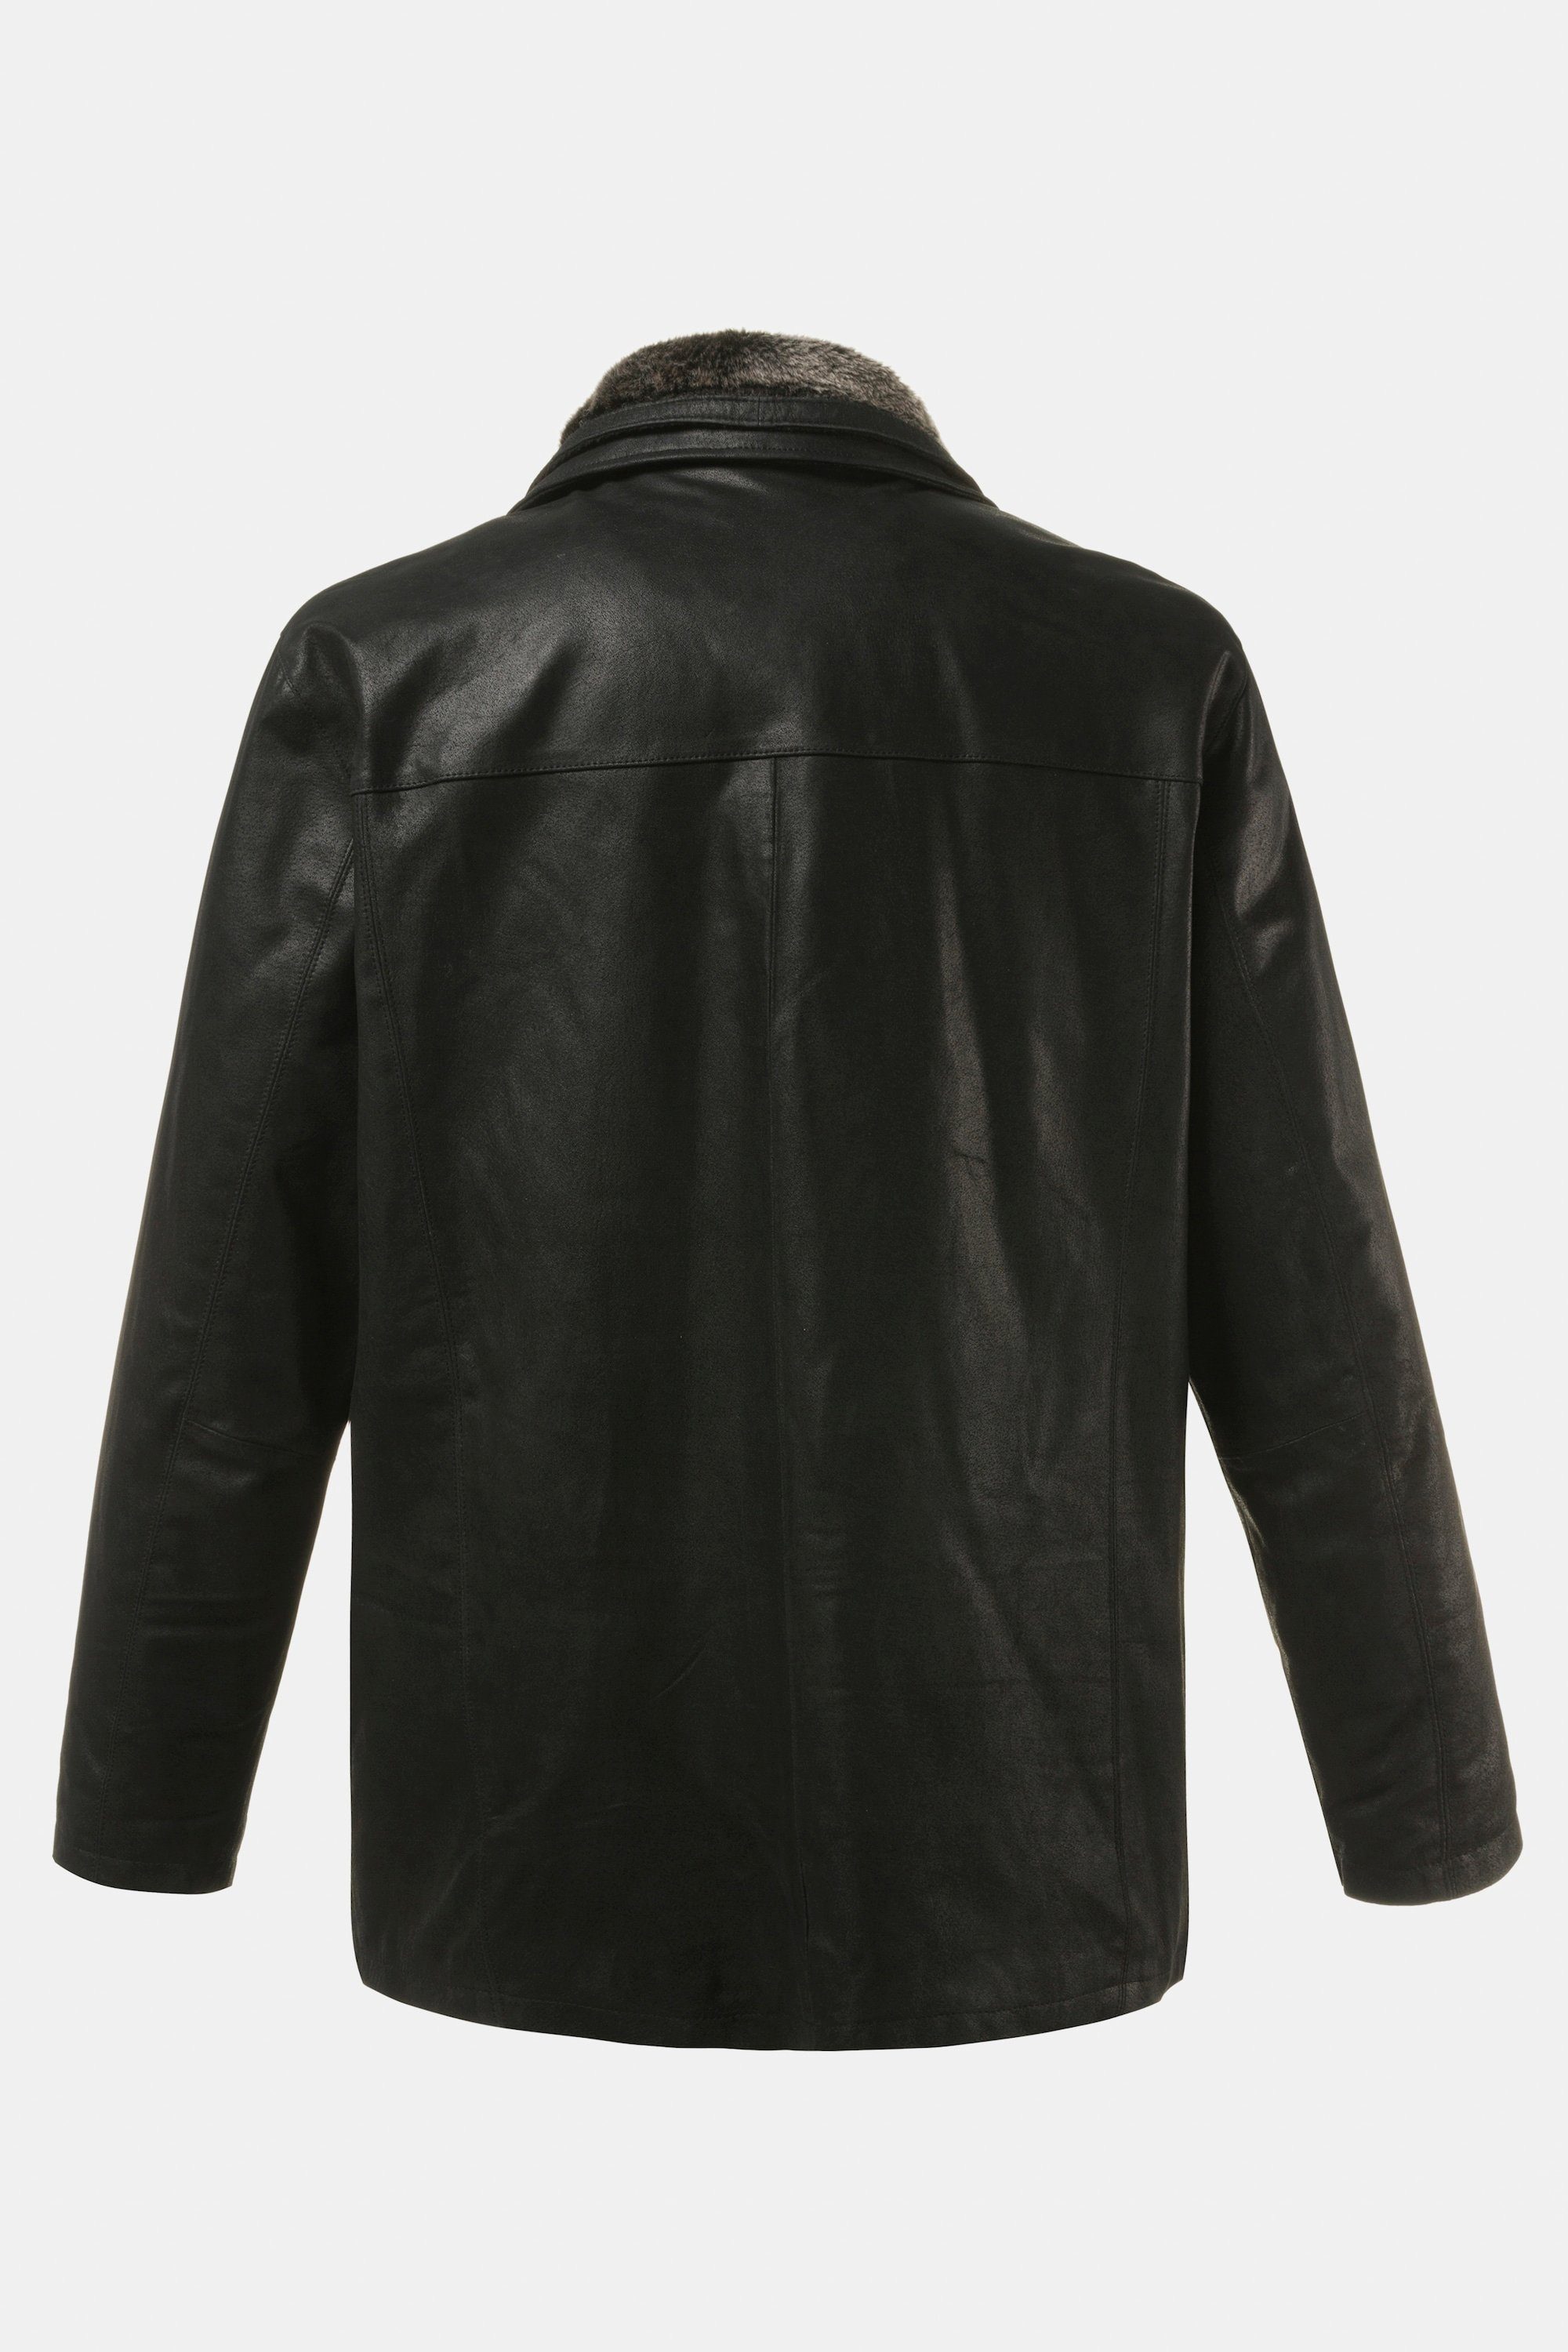 JP1880 Lederjacke Jacke Leder Porcleder dazu: schwarz gratis Leder-Handschuh